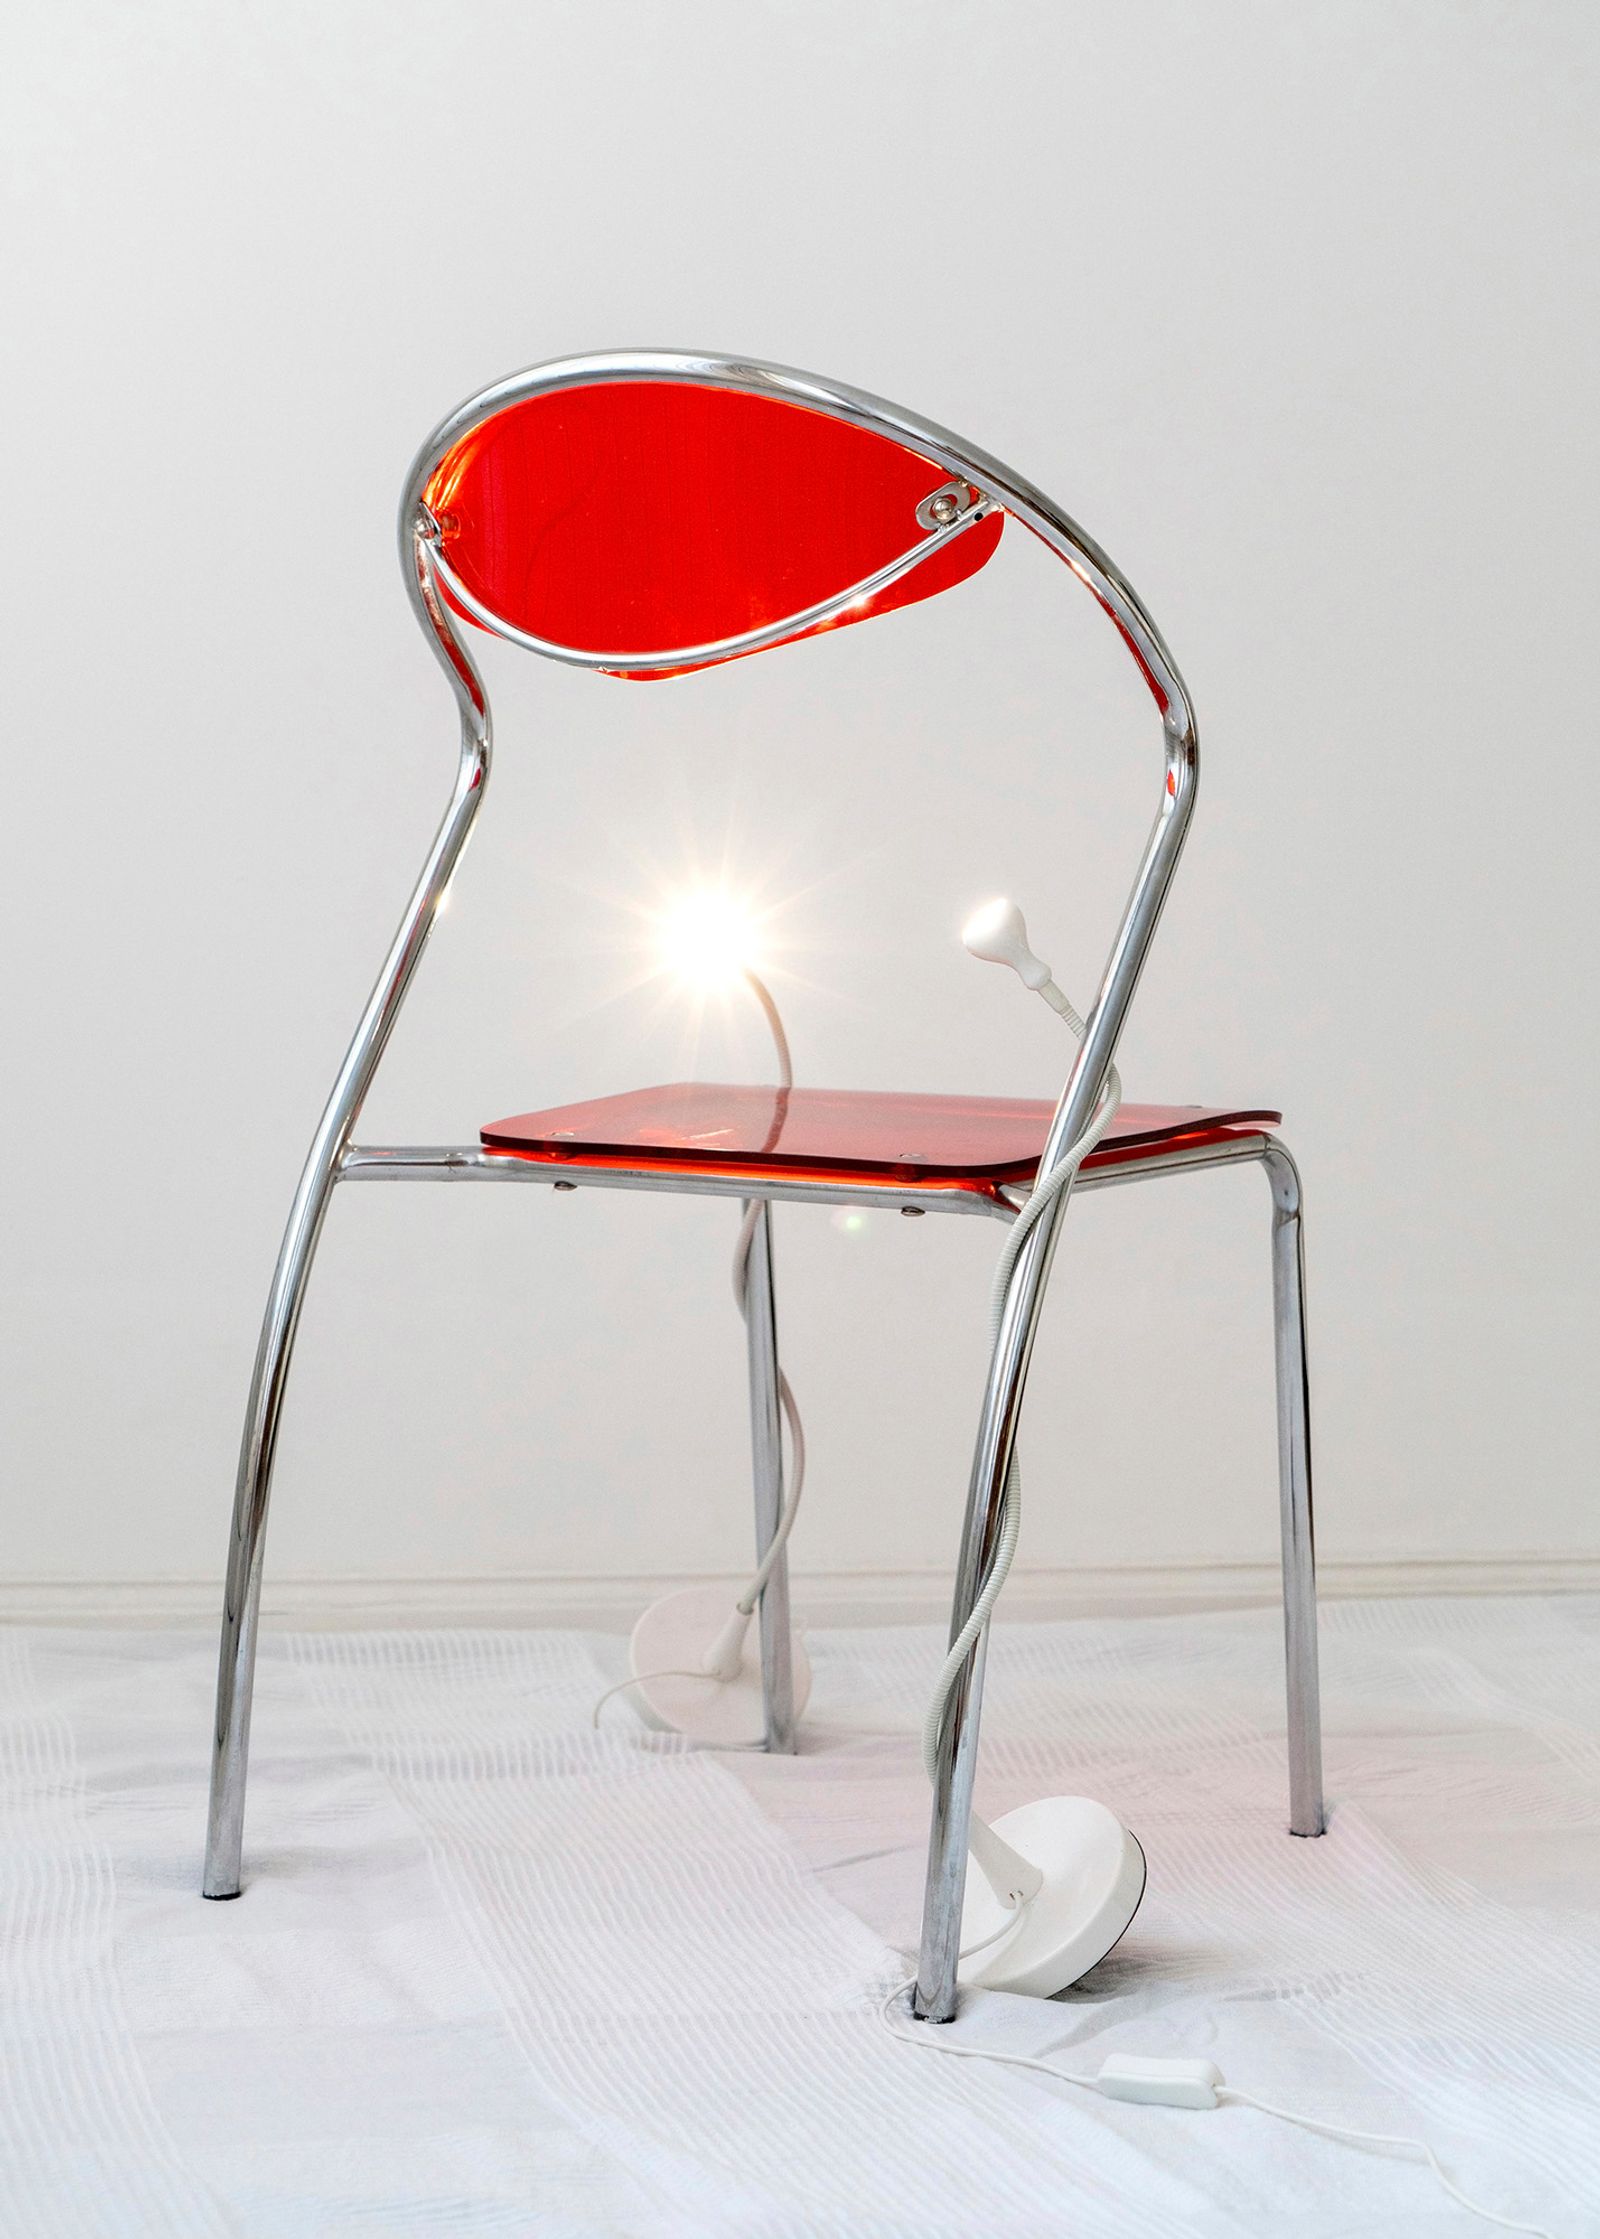 © Moritz Jekat - Chair and Bending Lights